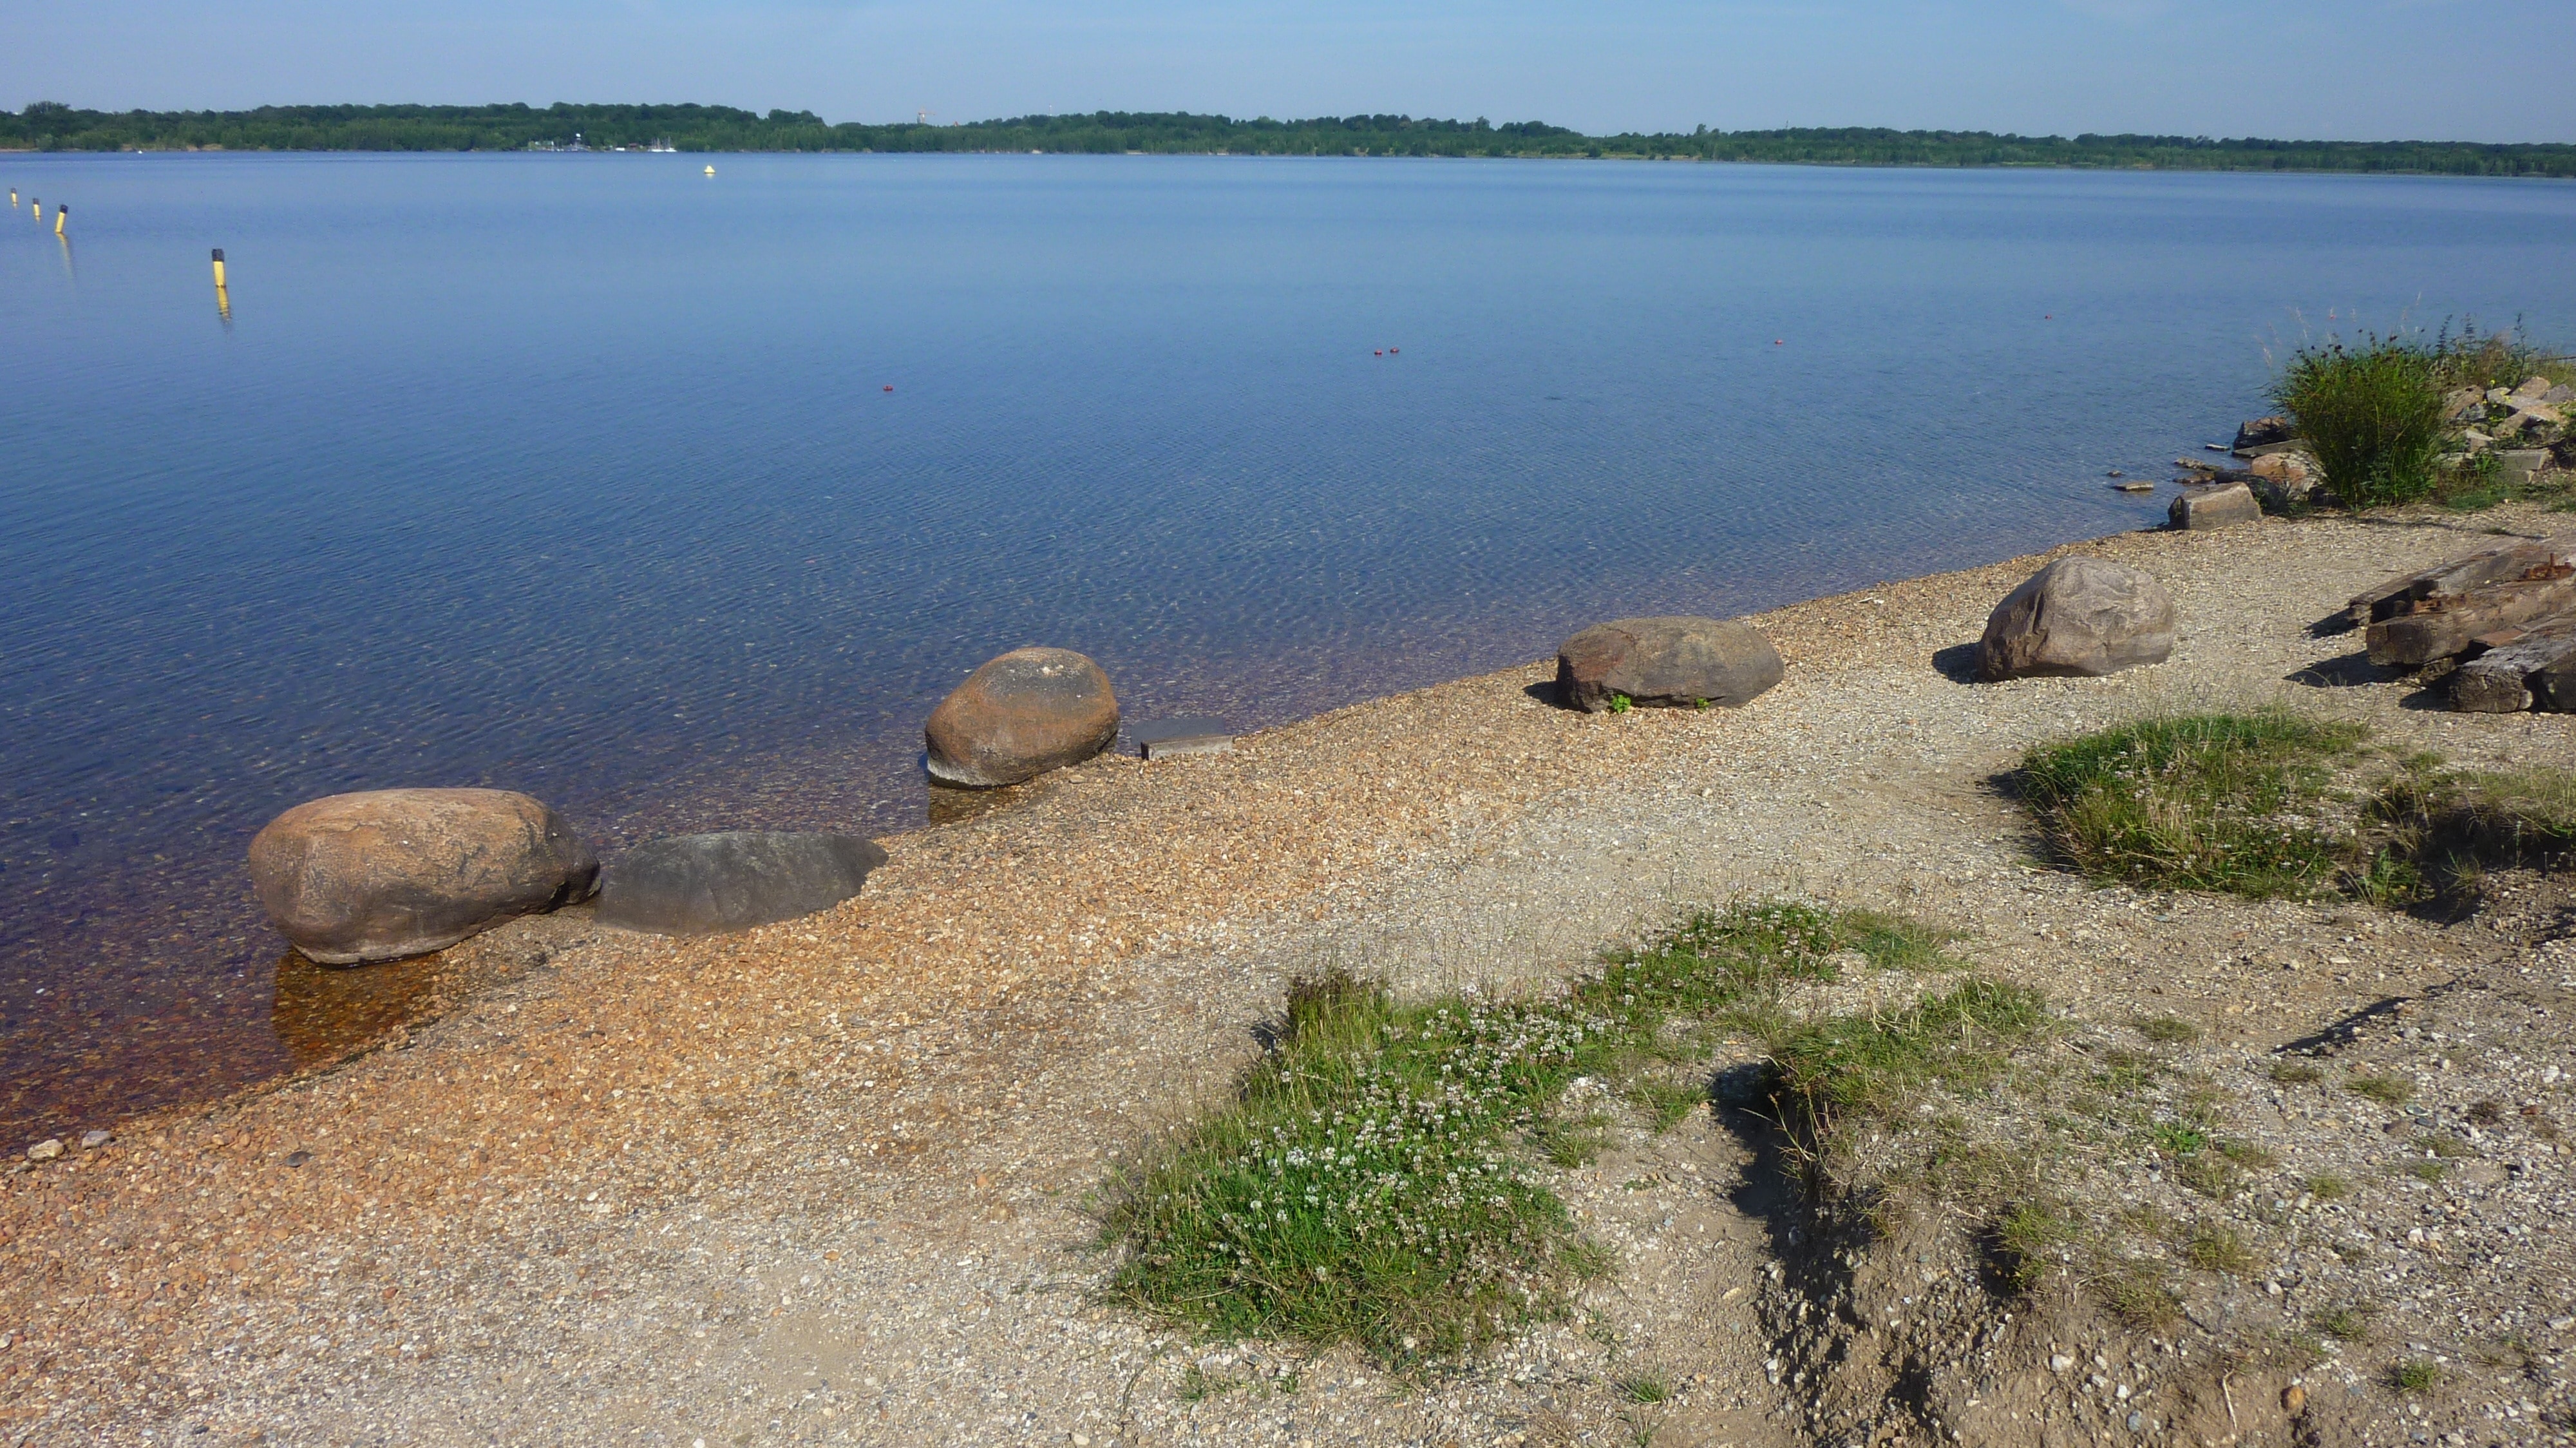 brown rocks near body of water